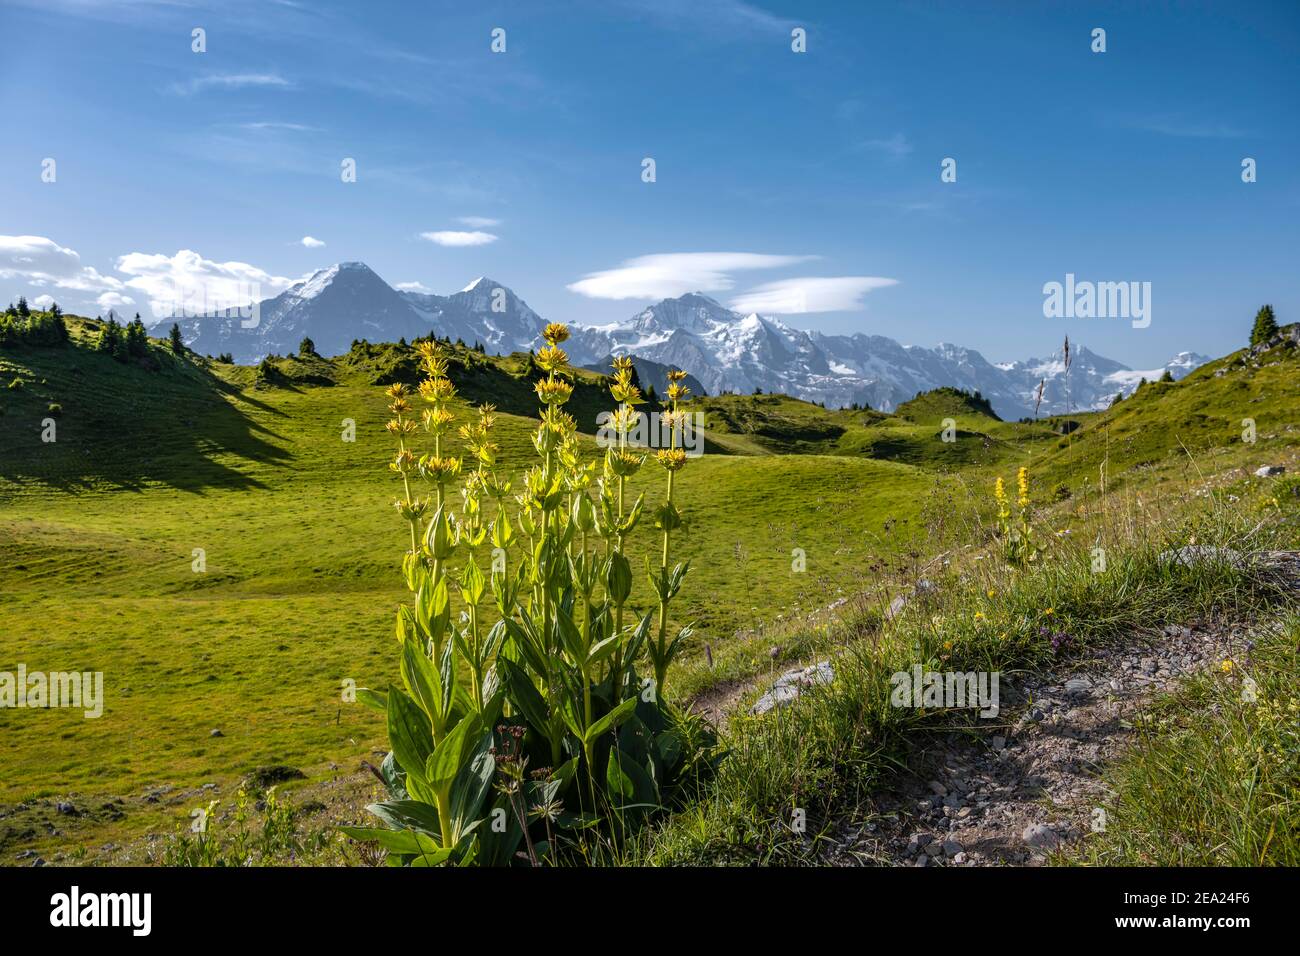 Genziana gialla, Schynige Platte, cima della montagna sul retro, Jungfrau regione, Grindelwald, Canton Berna, Svizzera Foto Stock